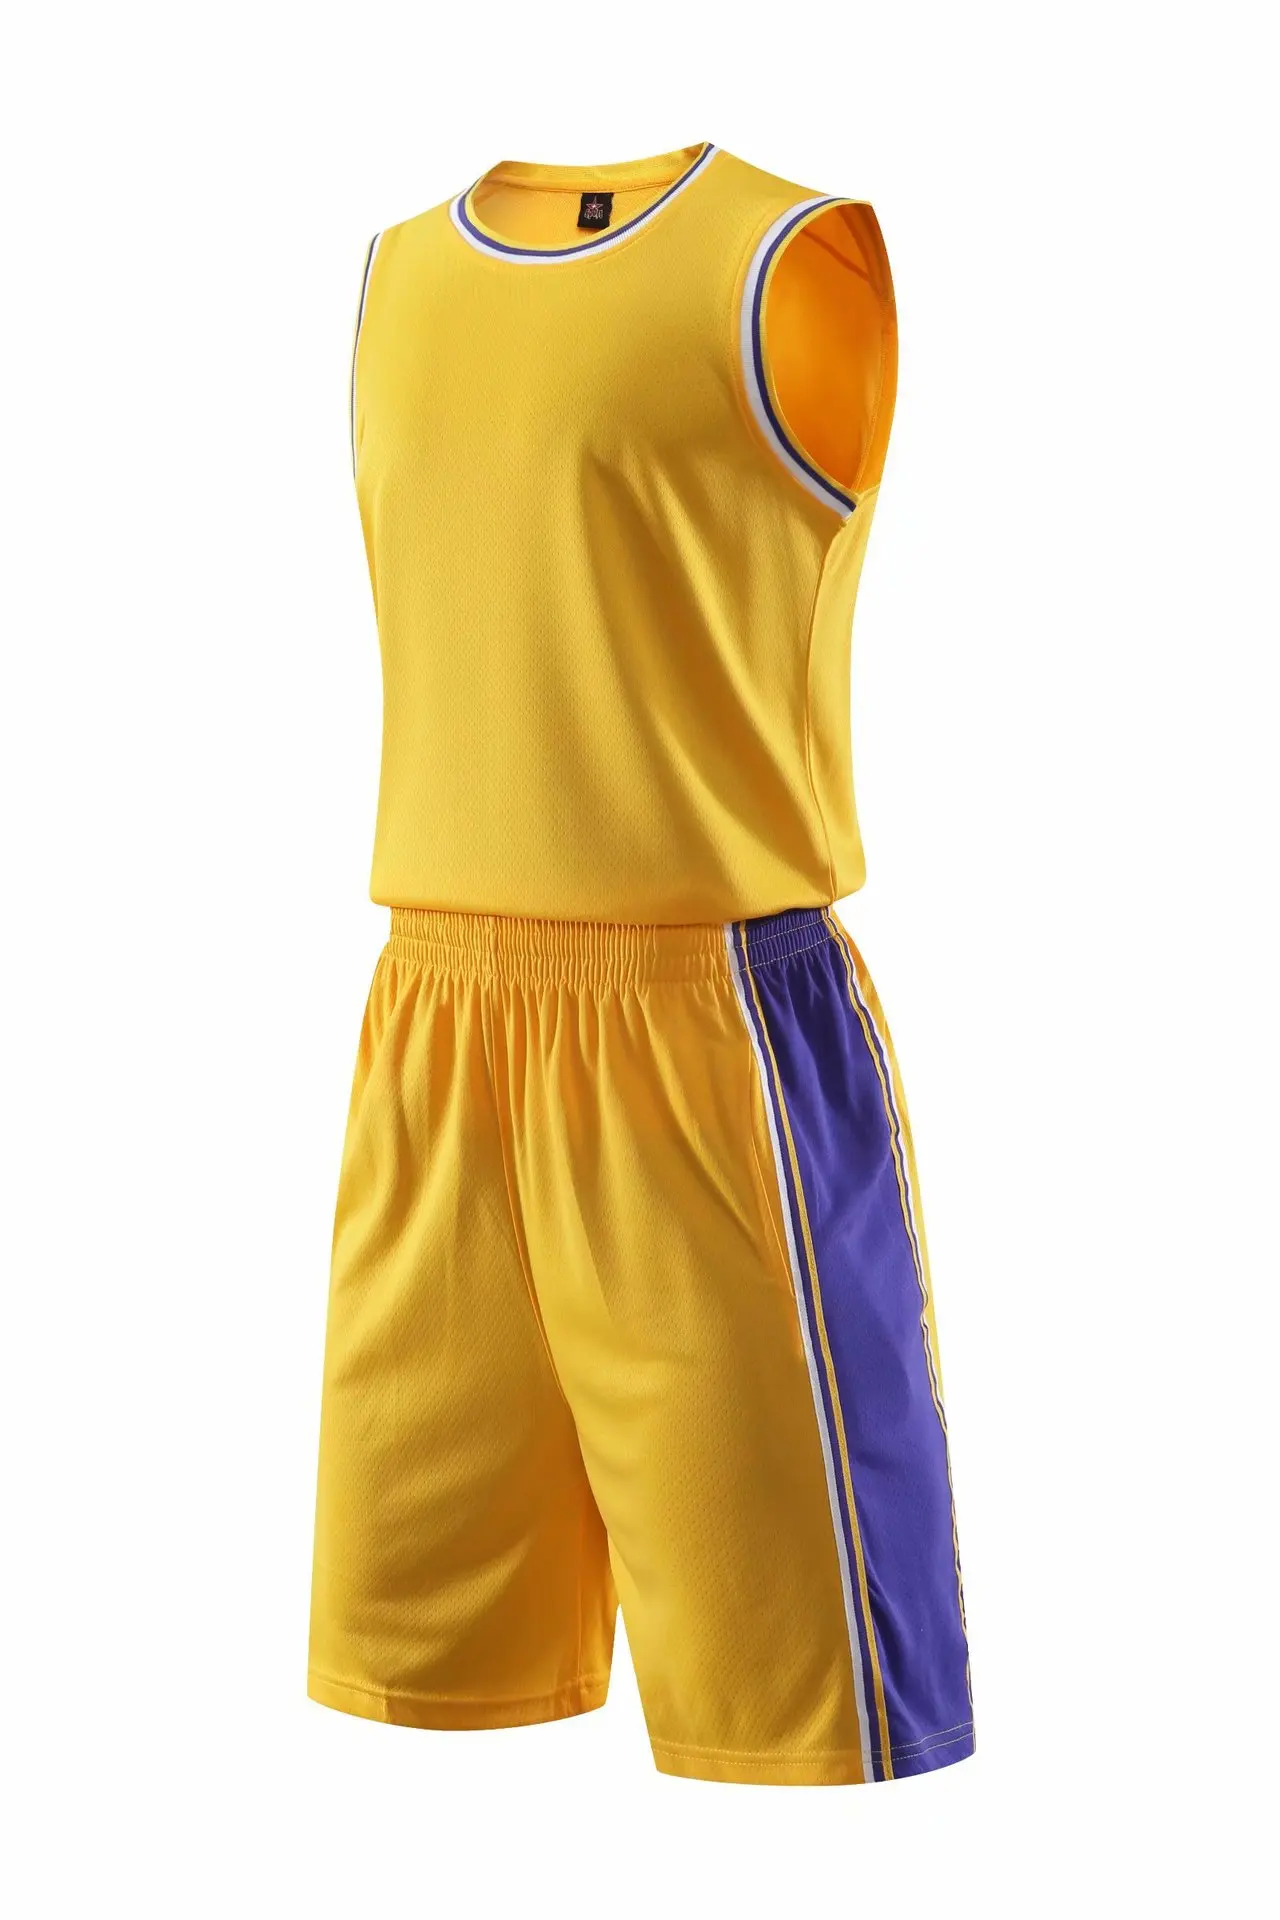 18-19 стиль Lakers NBA костюм для баскетбола спортивная одежда индивидуальные персонажи игры Джерси T